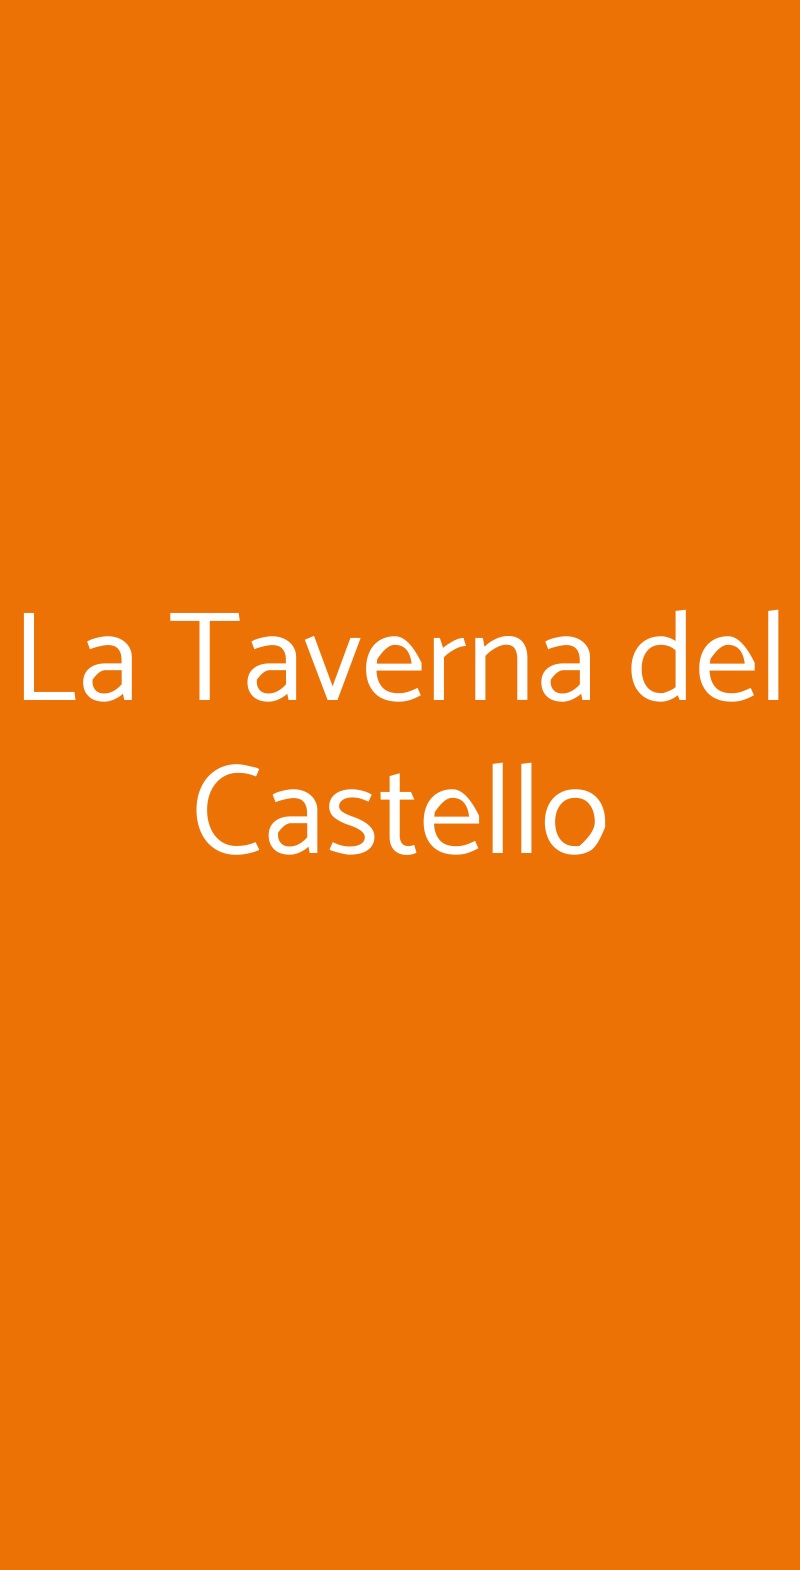 La Taverna del Castello Fiuggi menù 1 pagina